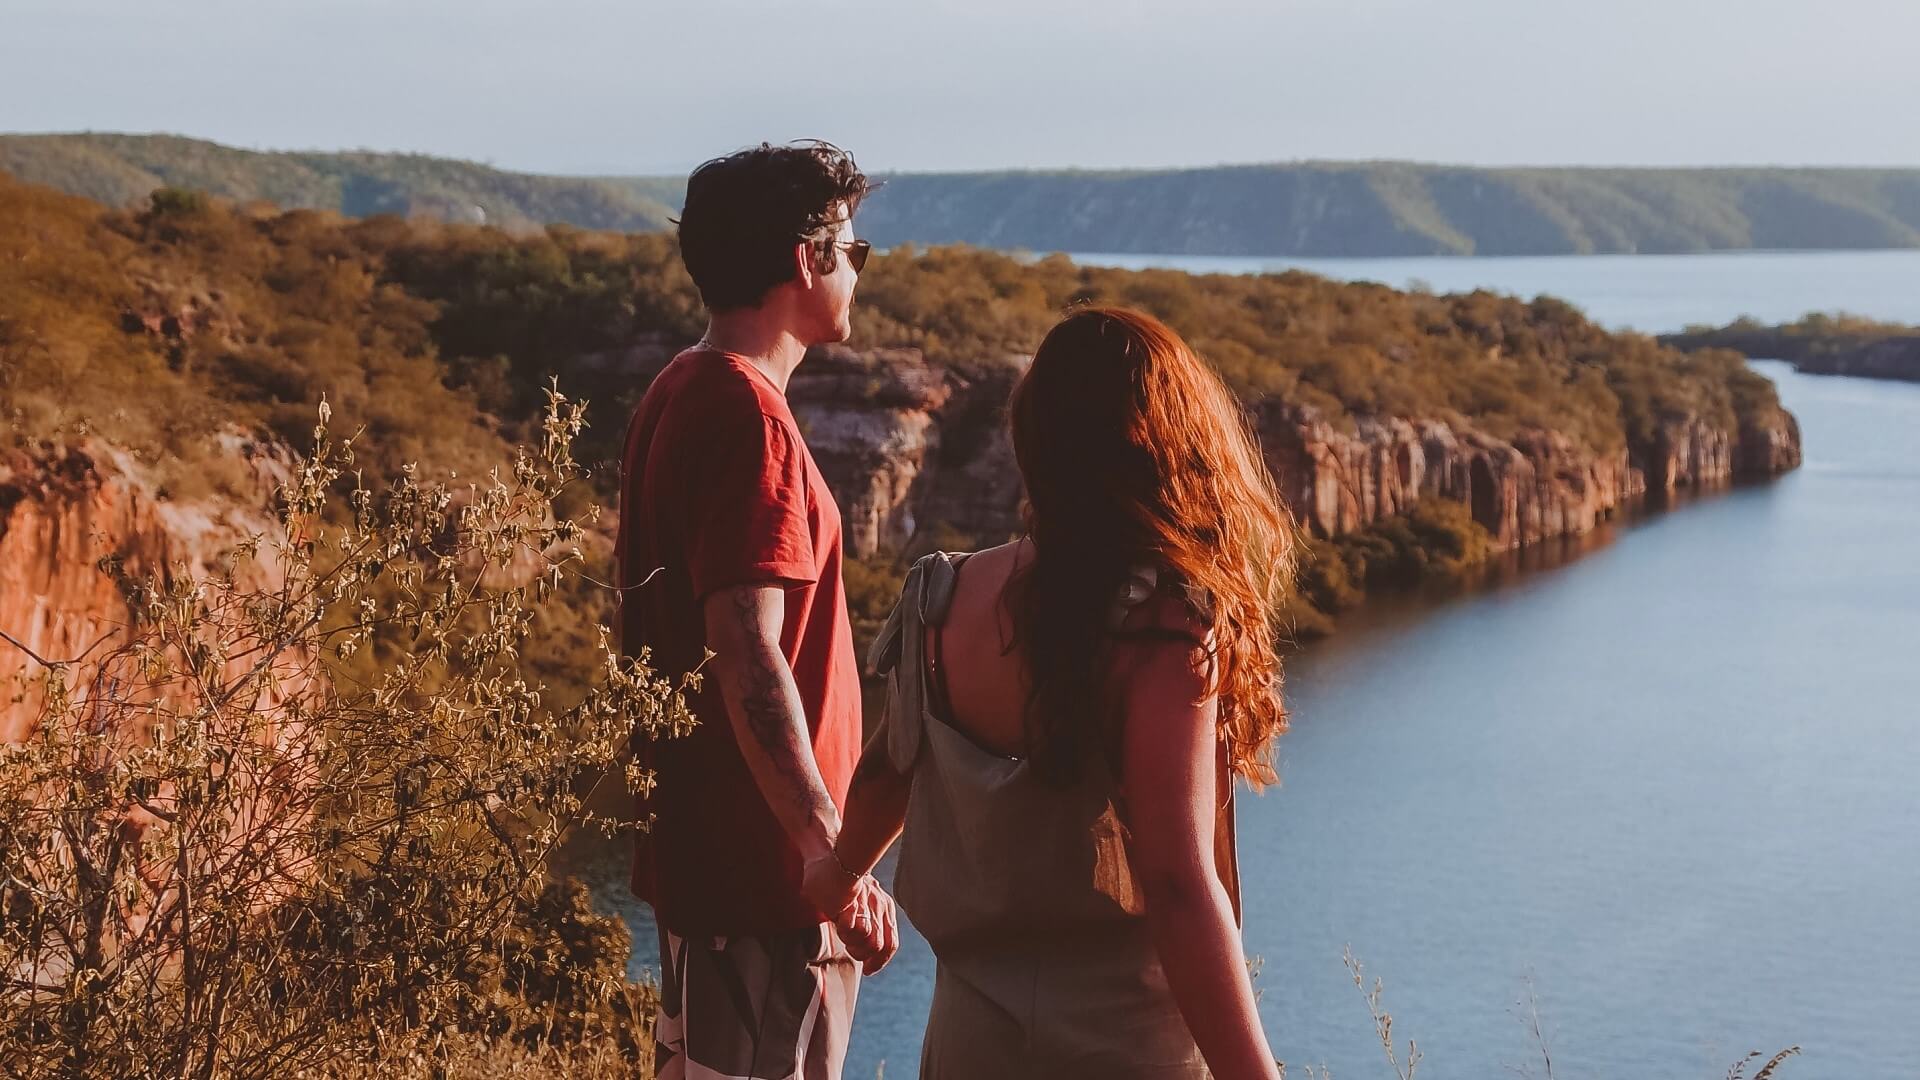 Homem e mulher de mãos dadas contemplam paisagem de rio cercado por cânions em dia ensolarado